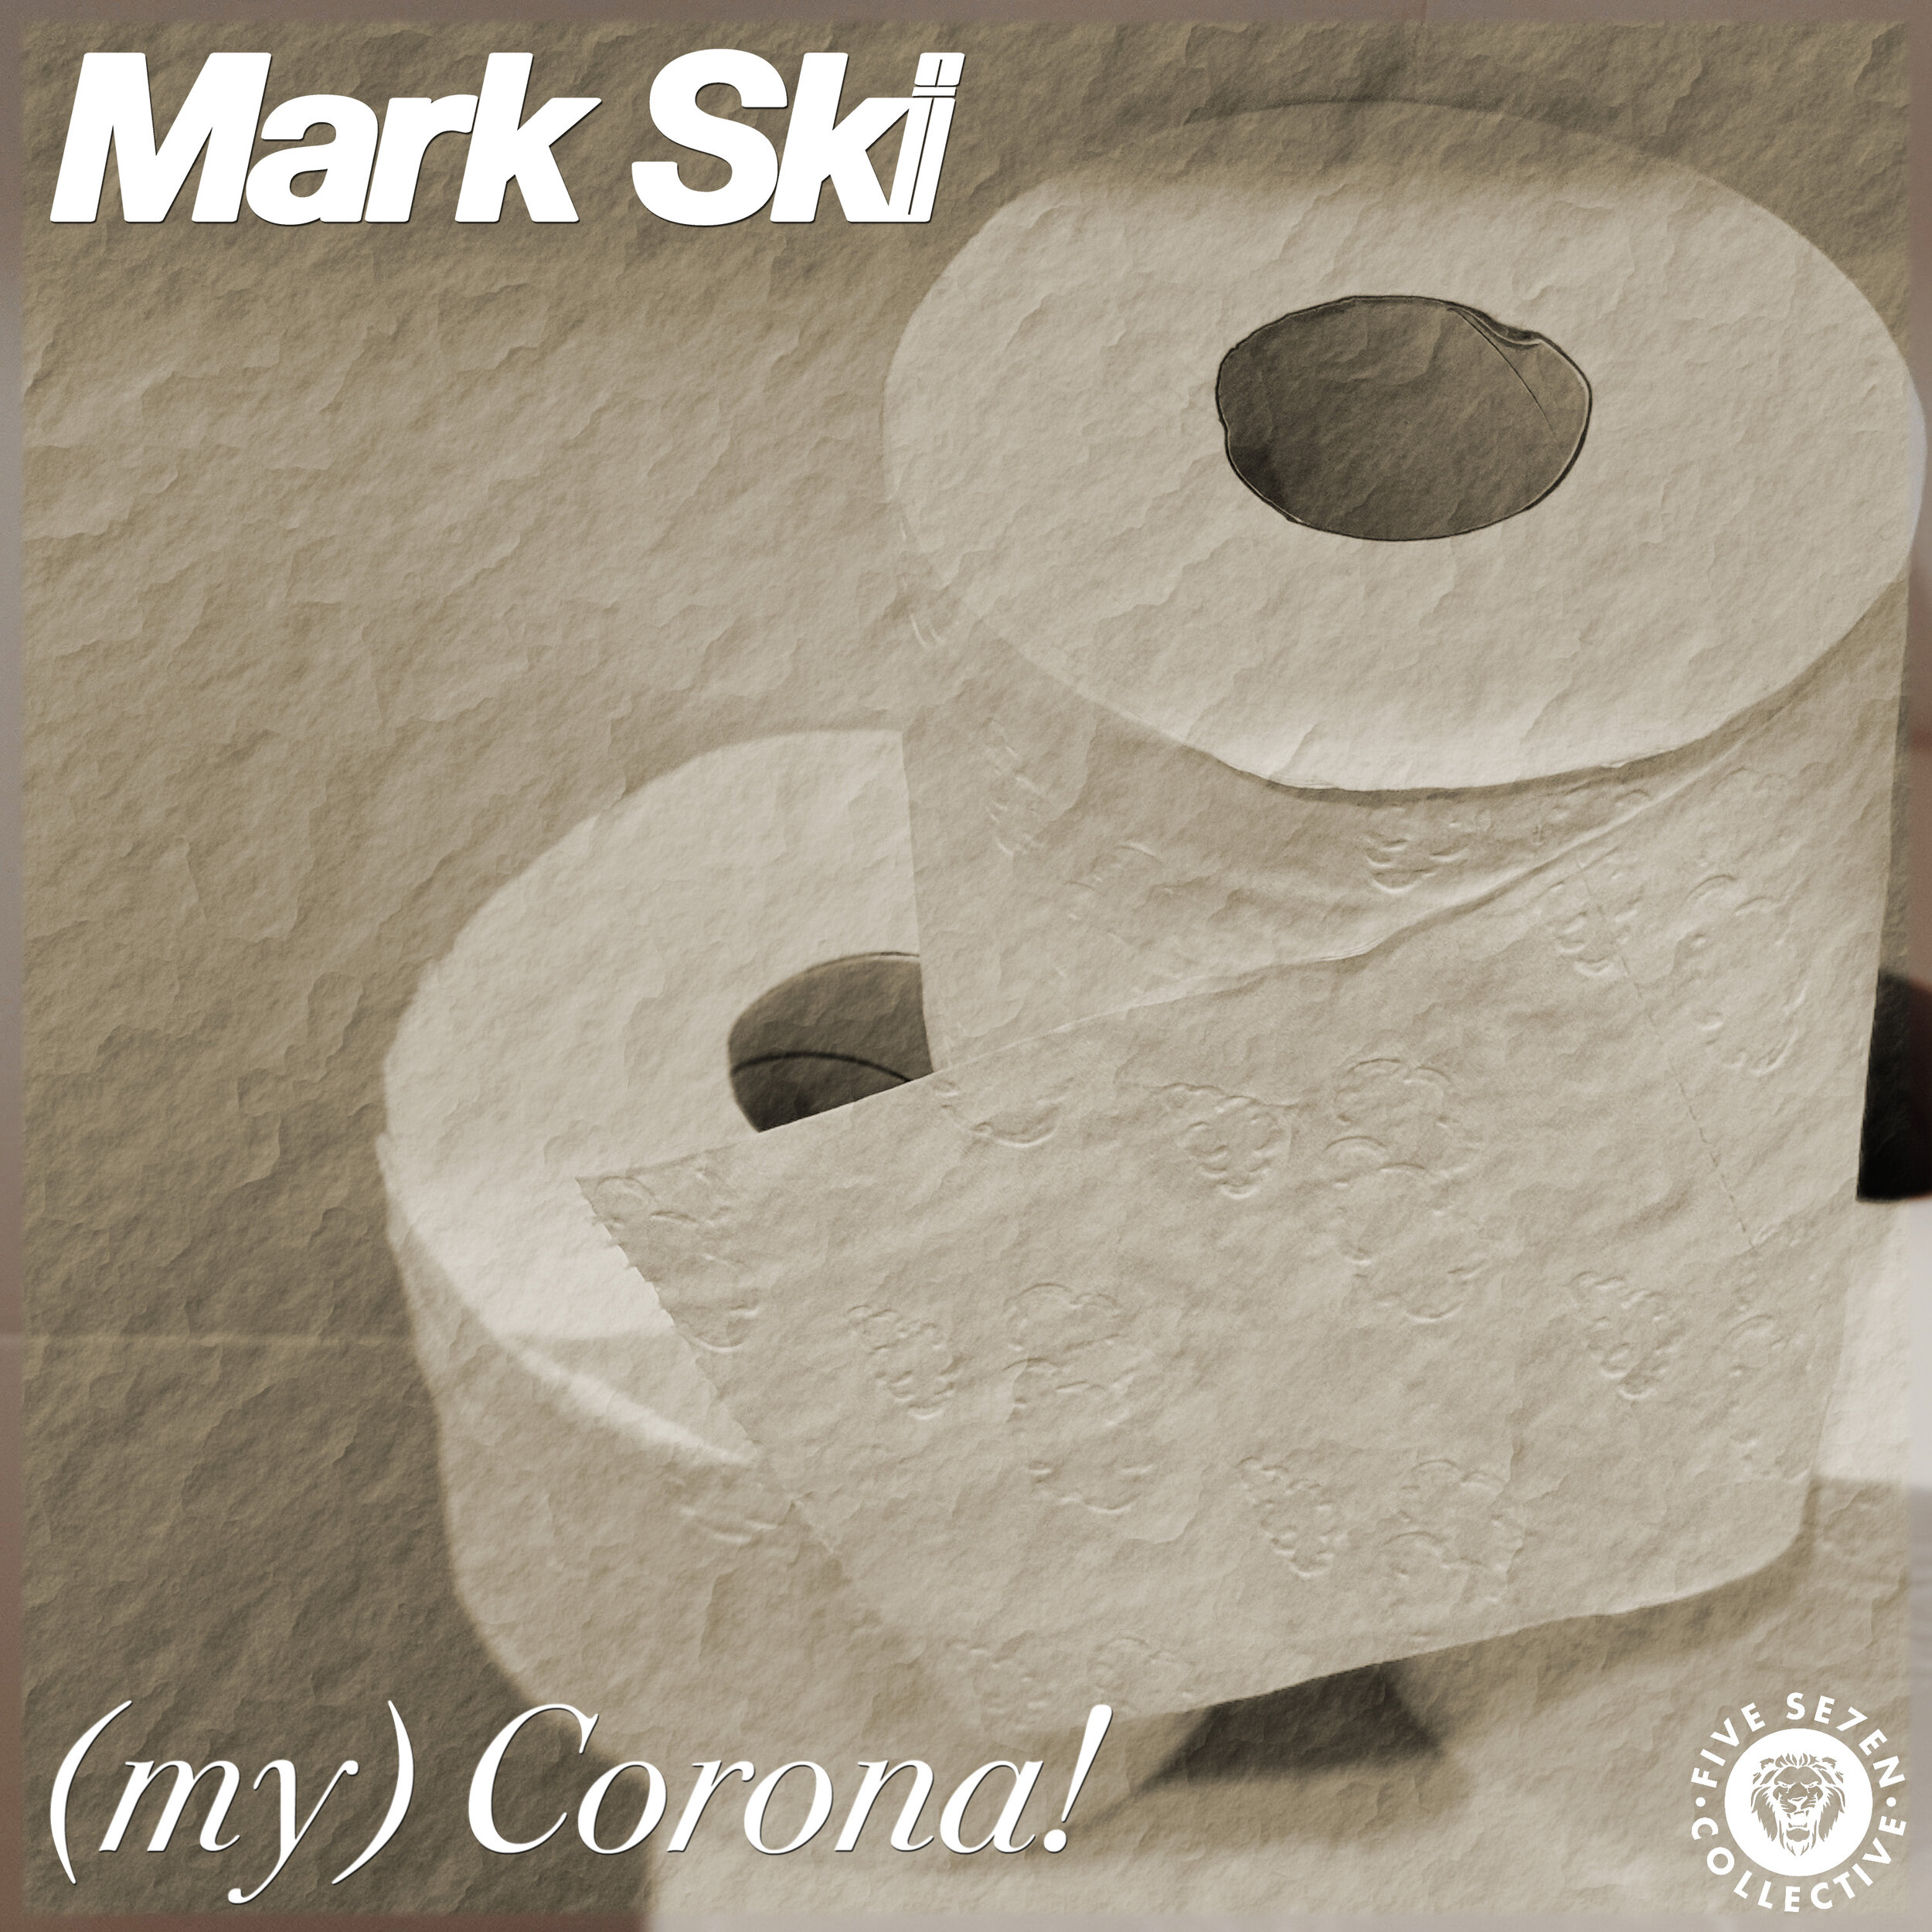 (my) Corona! - Mark Ski